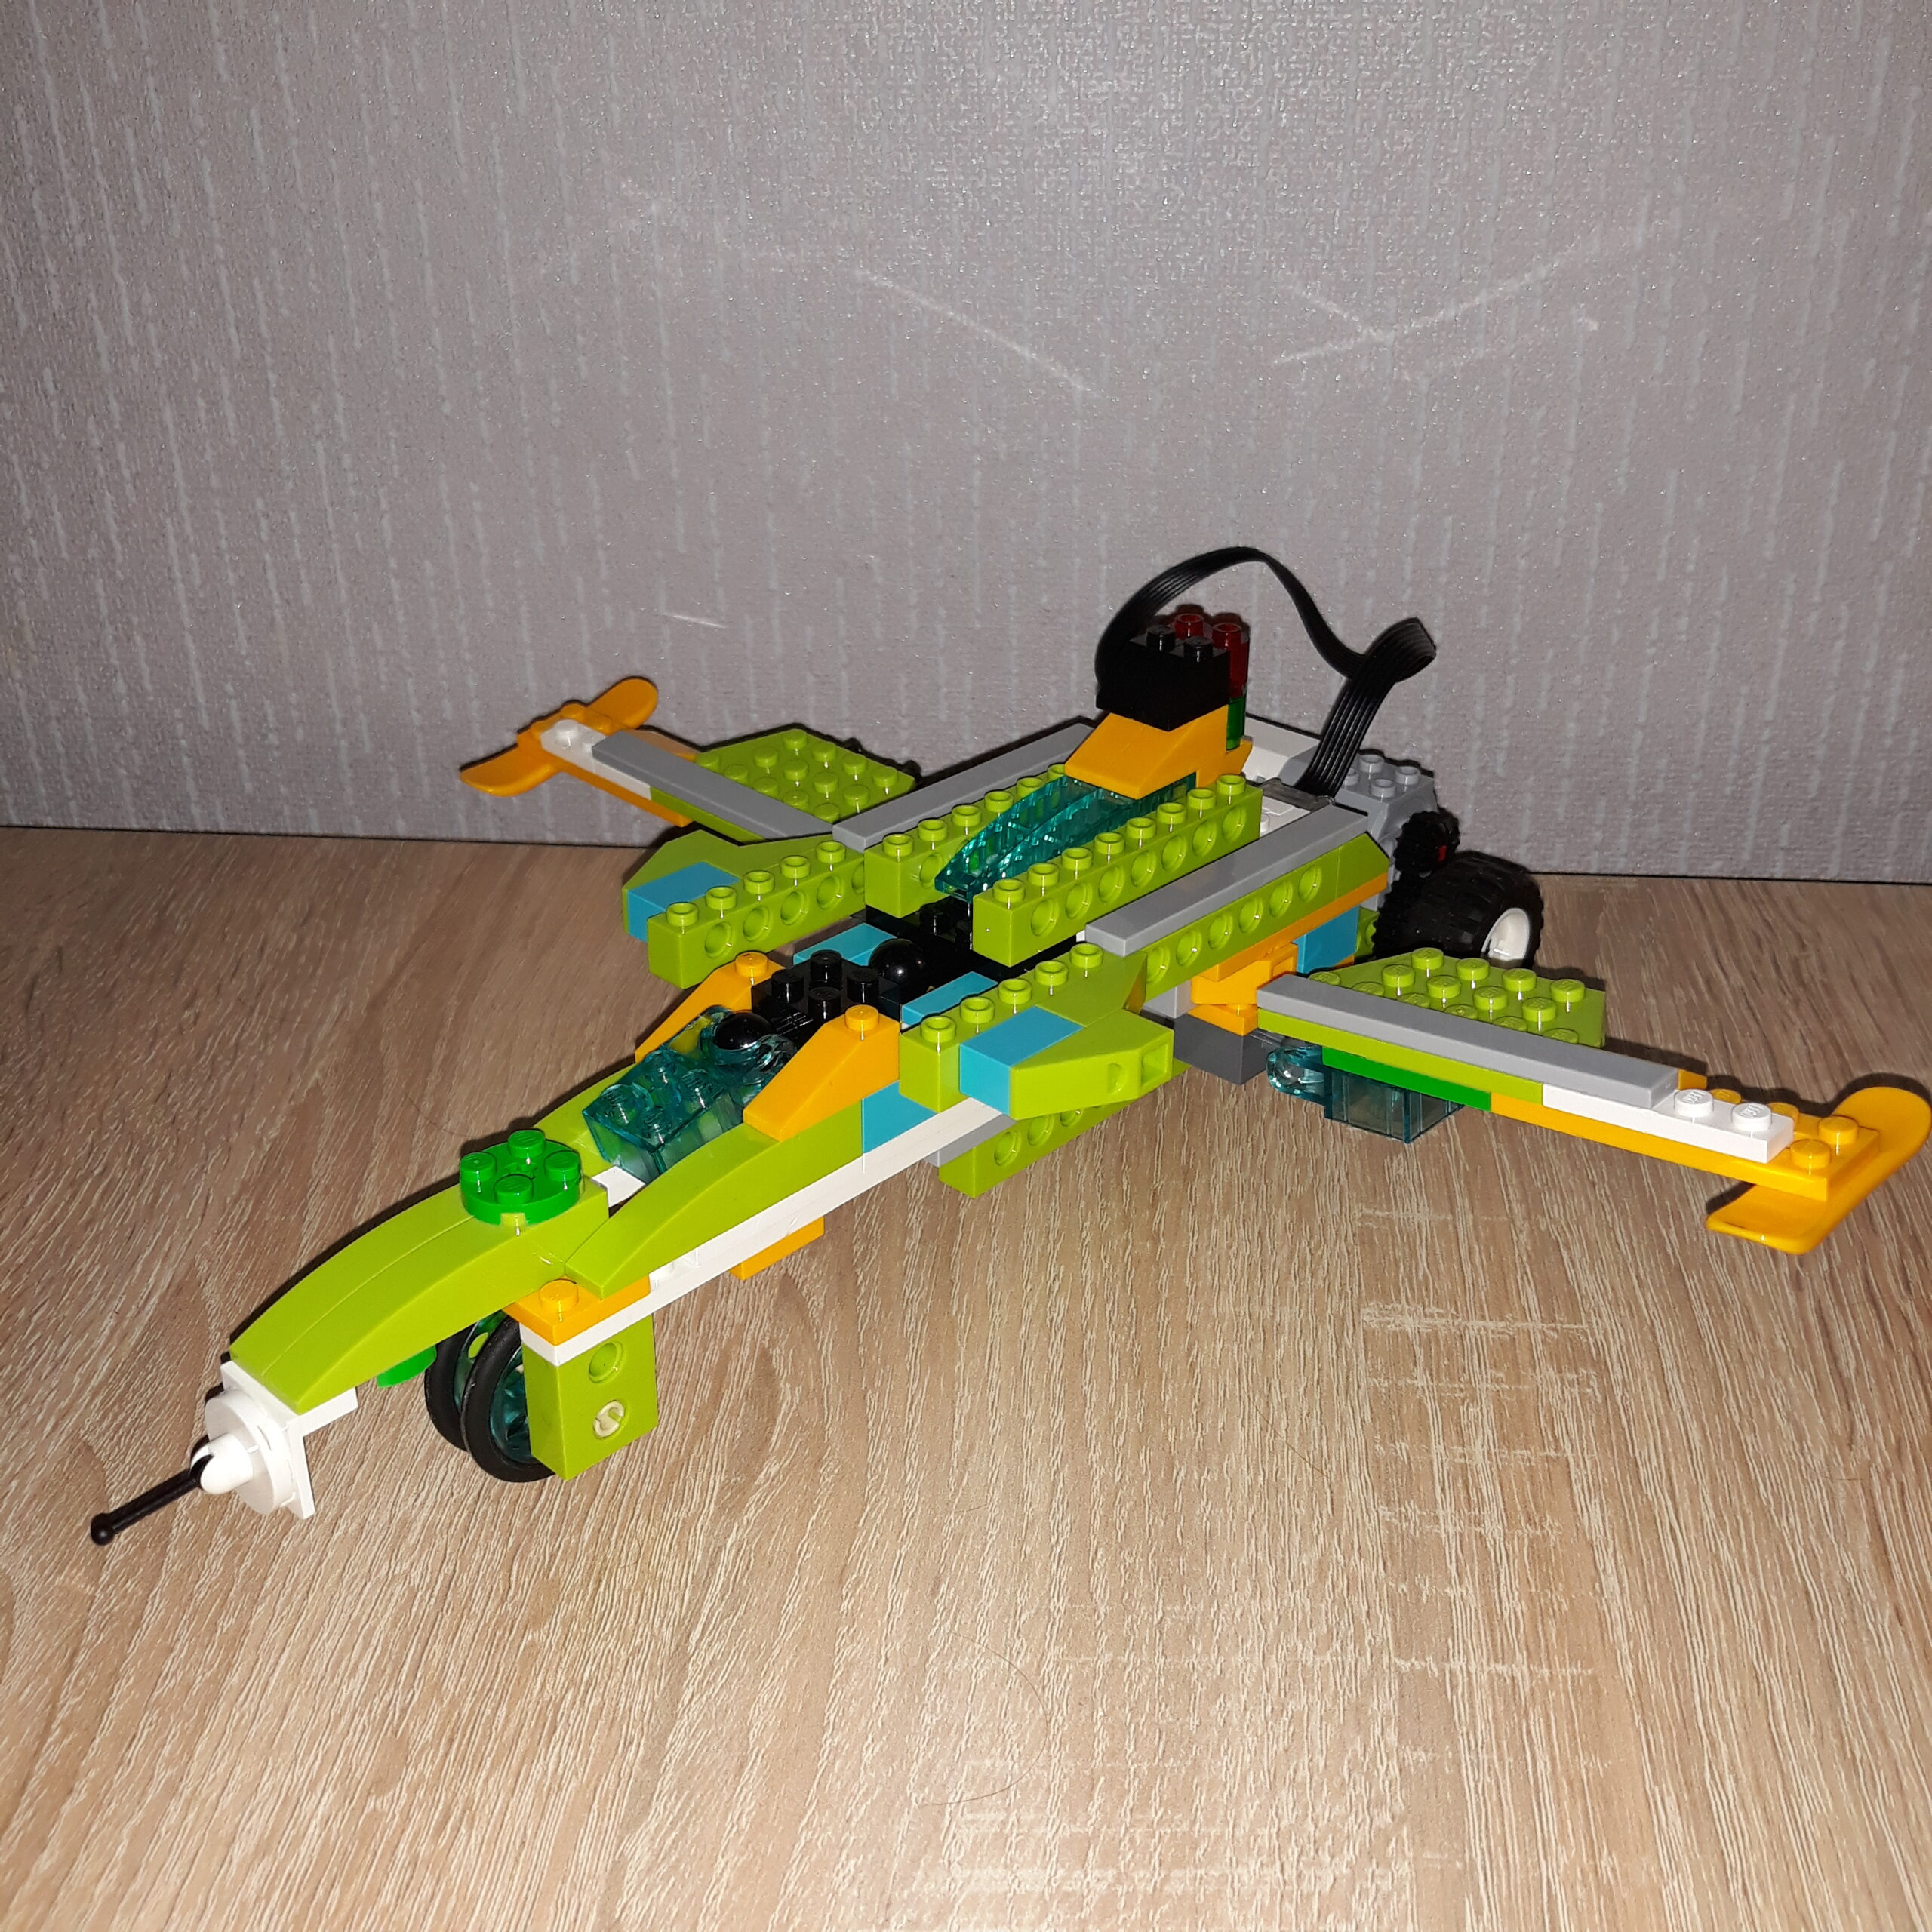 Инструкция по сборке из набора LEGO Education WeDo 2.0 Самолет Jet Fighter 